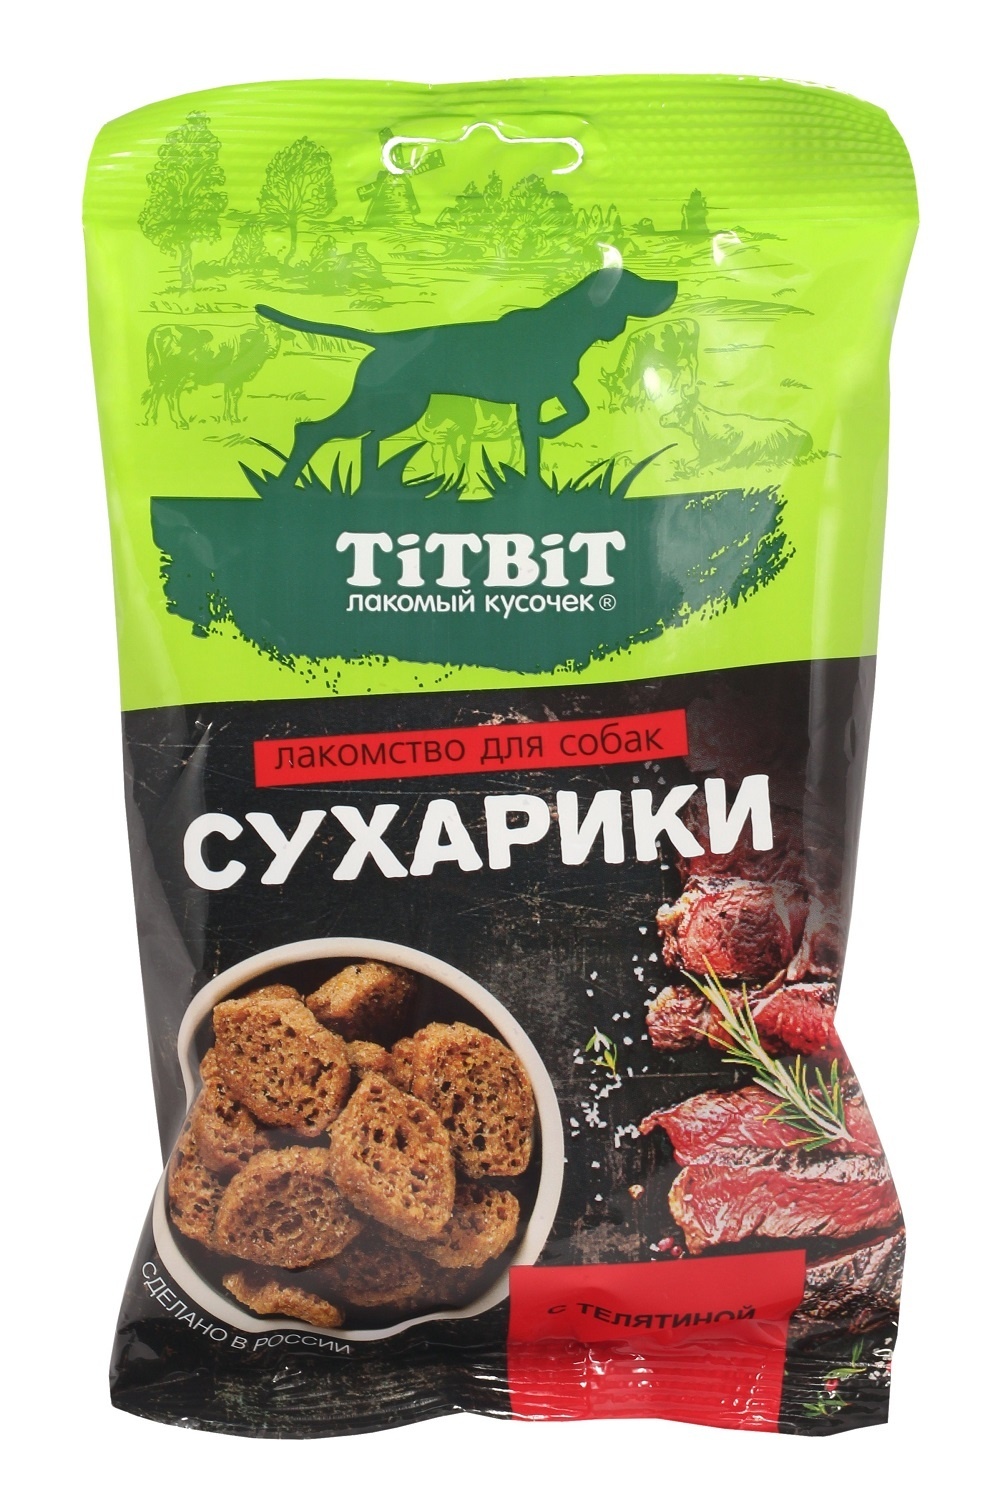 TiTBiT TiTBiT сухарики с телятиной, лакомство для собак (55 г) лакомство для собак titbit мюсли fitness с телятиной и злаками 40 г